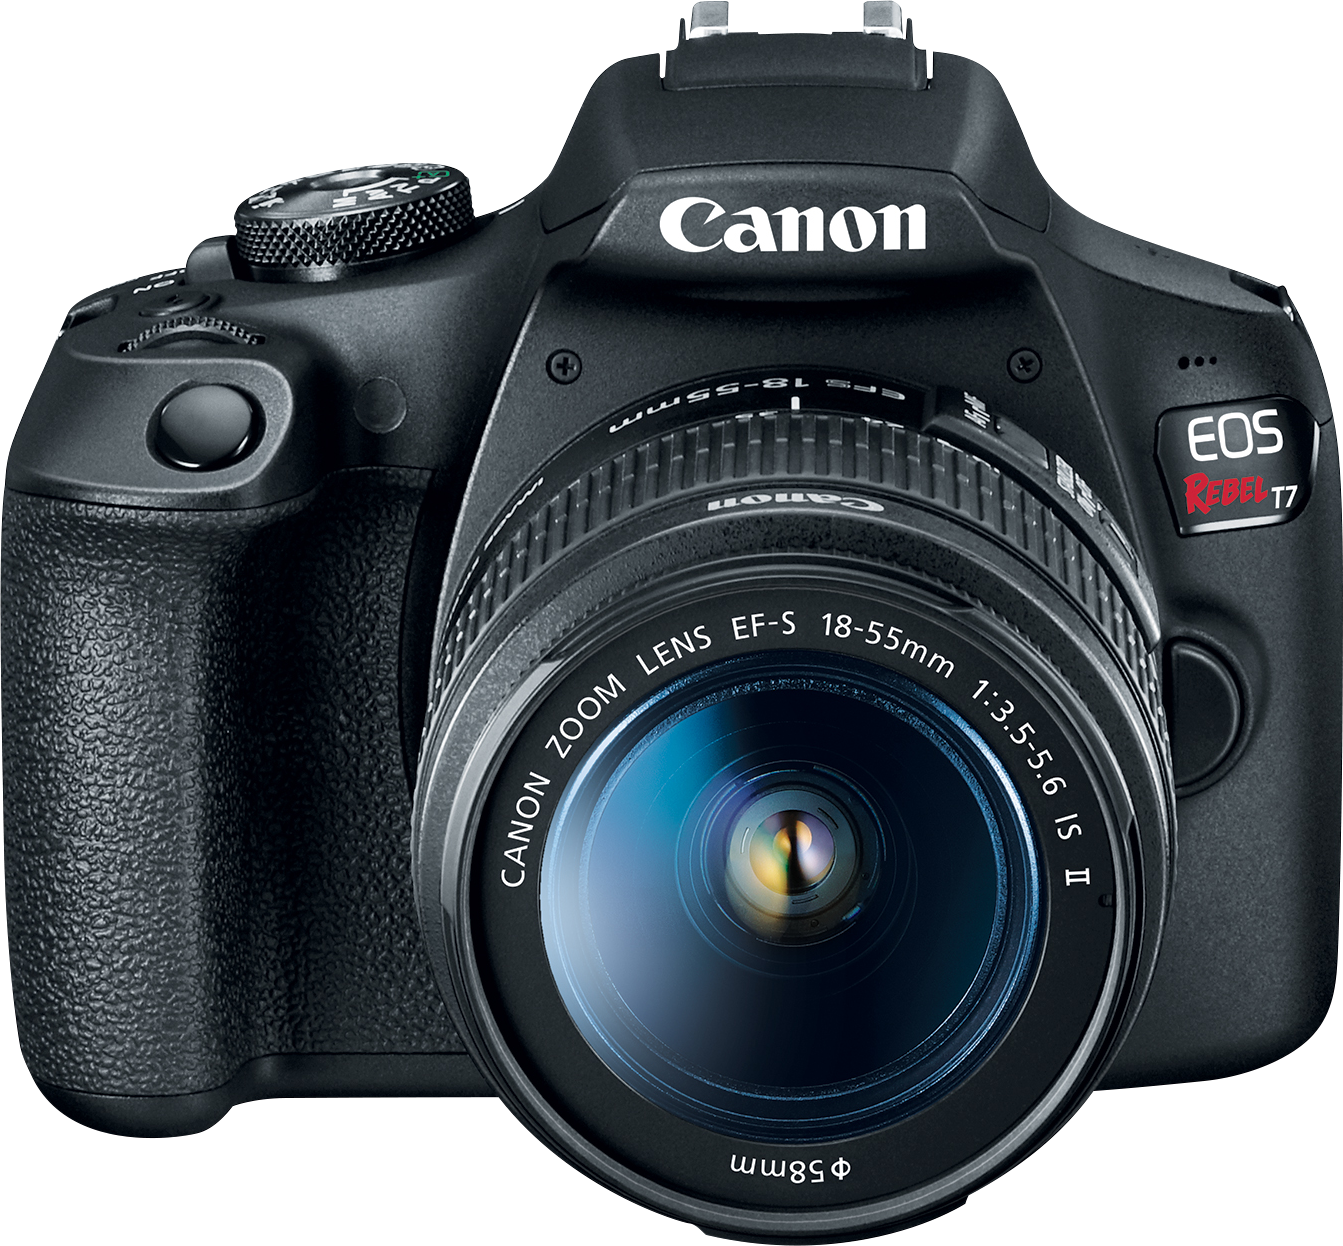 Best cameras under $500: Canon EOS Rebel T7